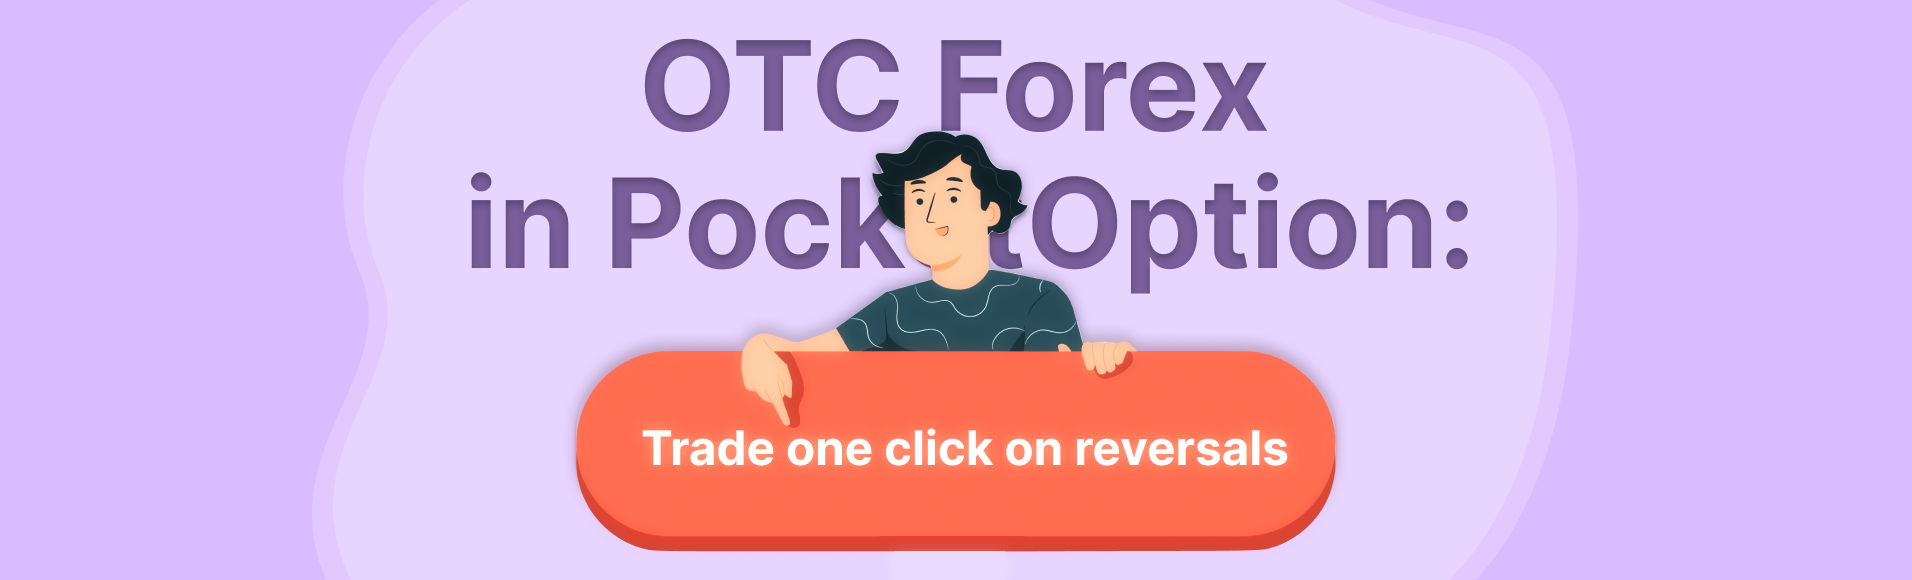 OTC Forex dans PocketOption : négociez en un clic sur les inversions